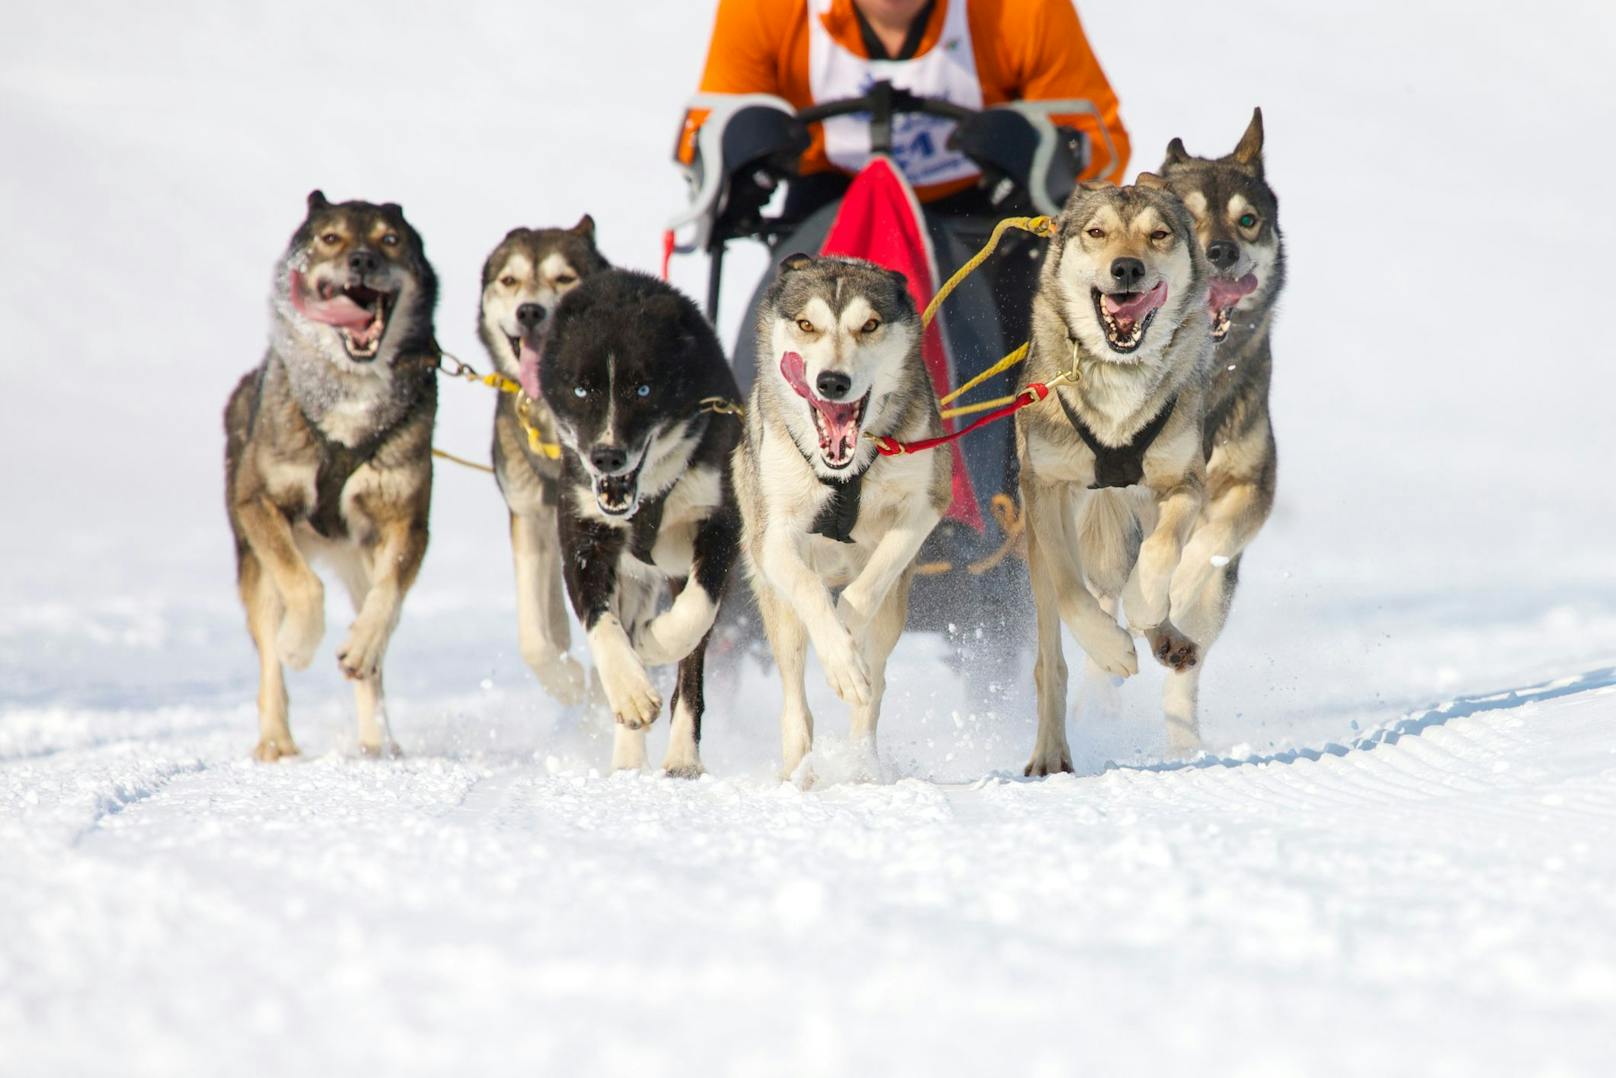 Der "Siberian Husky" und der "Alaskan Malamute" sind wohl die bekanntesten "Schlittenhunde" - wobei eigentlich jeder Hund ein Schlittenhund ist, der eben vor einen Schlitten gespannt werden kann.&nbsp;